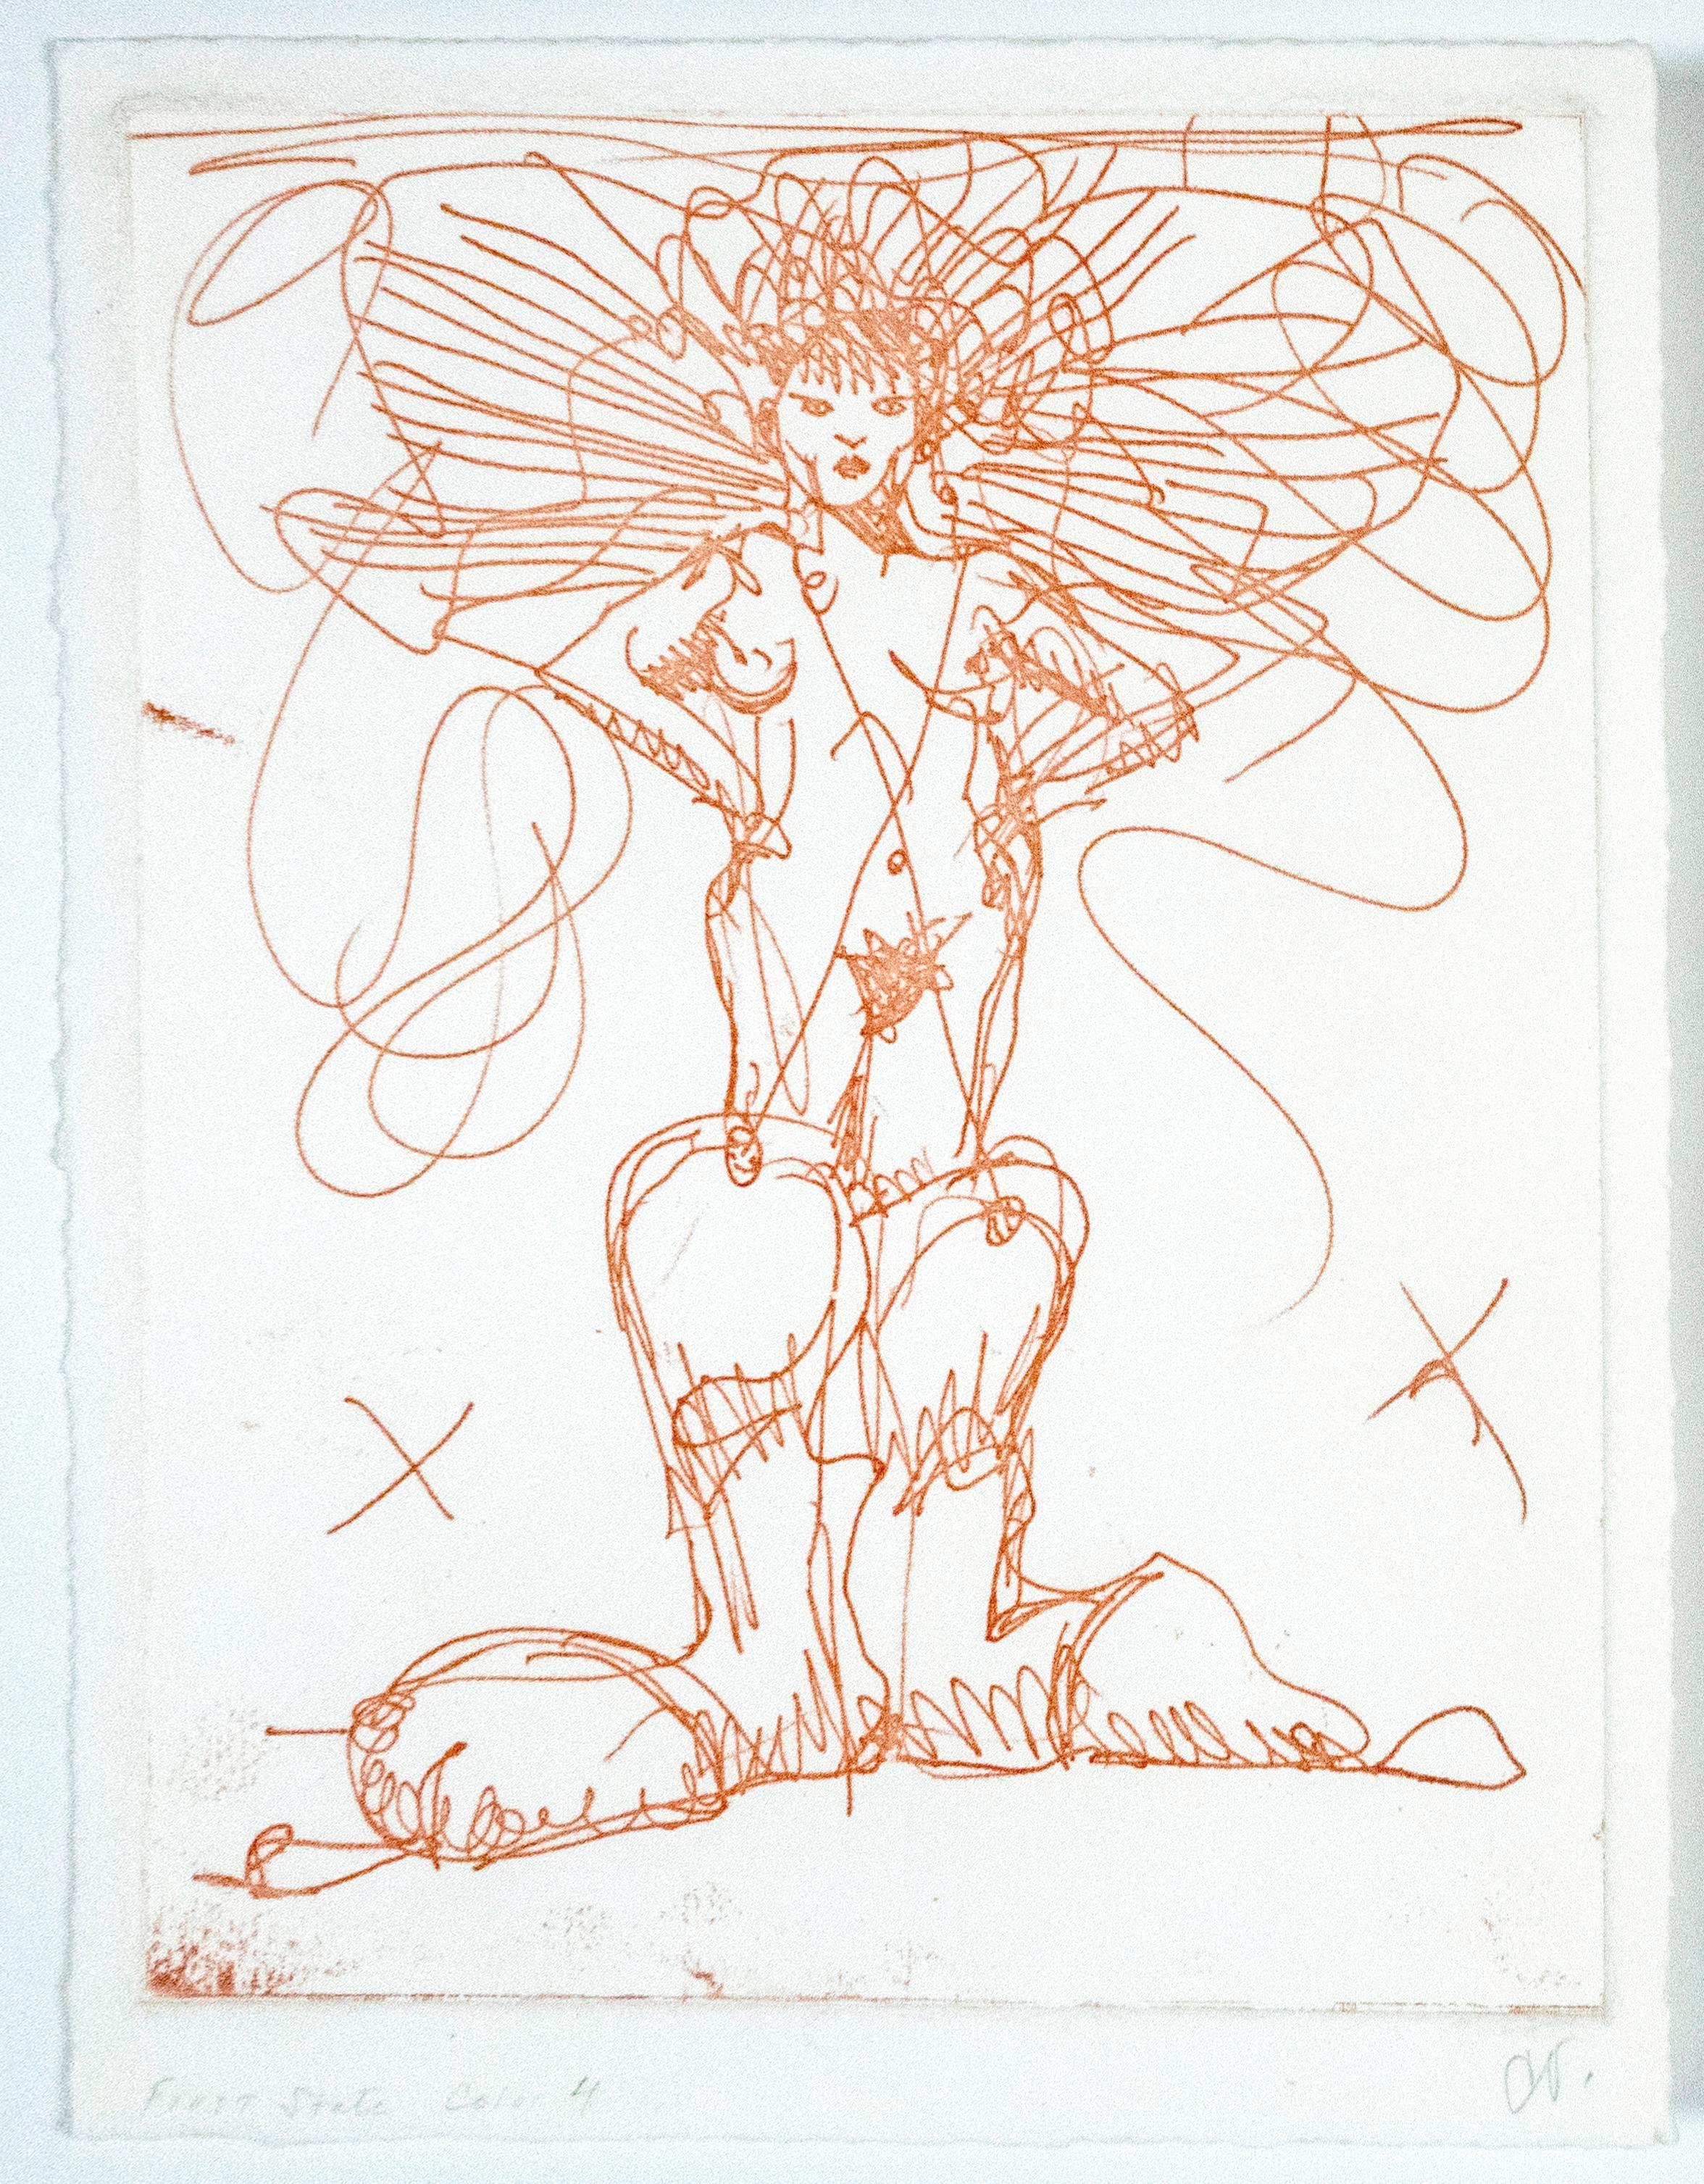 Une gravure unique et inédite de Claes Oldenburg. Cet imprimé ludique et érotique est imprimé en or chatoyant. Une femme nue portant des bottes de cow-boy surdimensionnées se tient debout, les mains sur les hanches, un X griffonné de chaque côté de